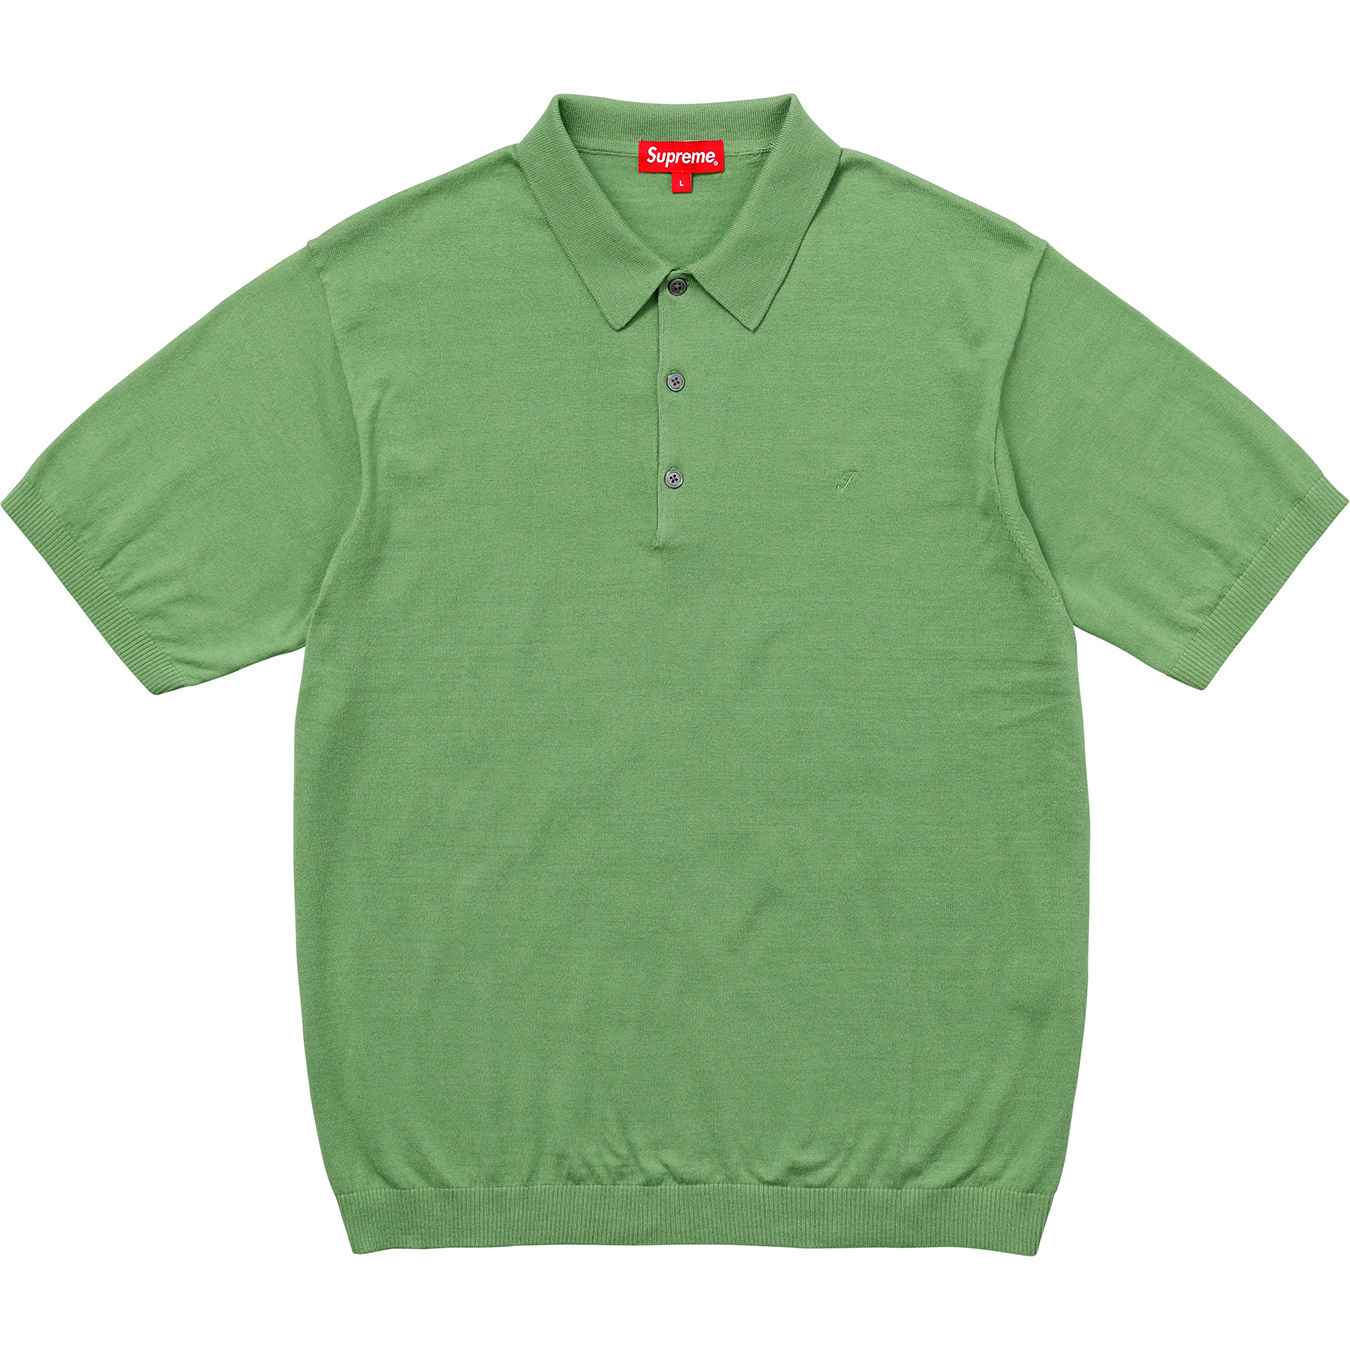 Supreme Knit Polo Green Men's - SS18 - US